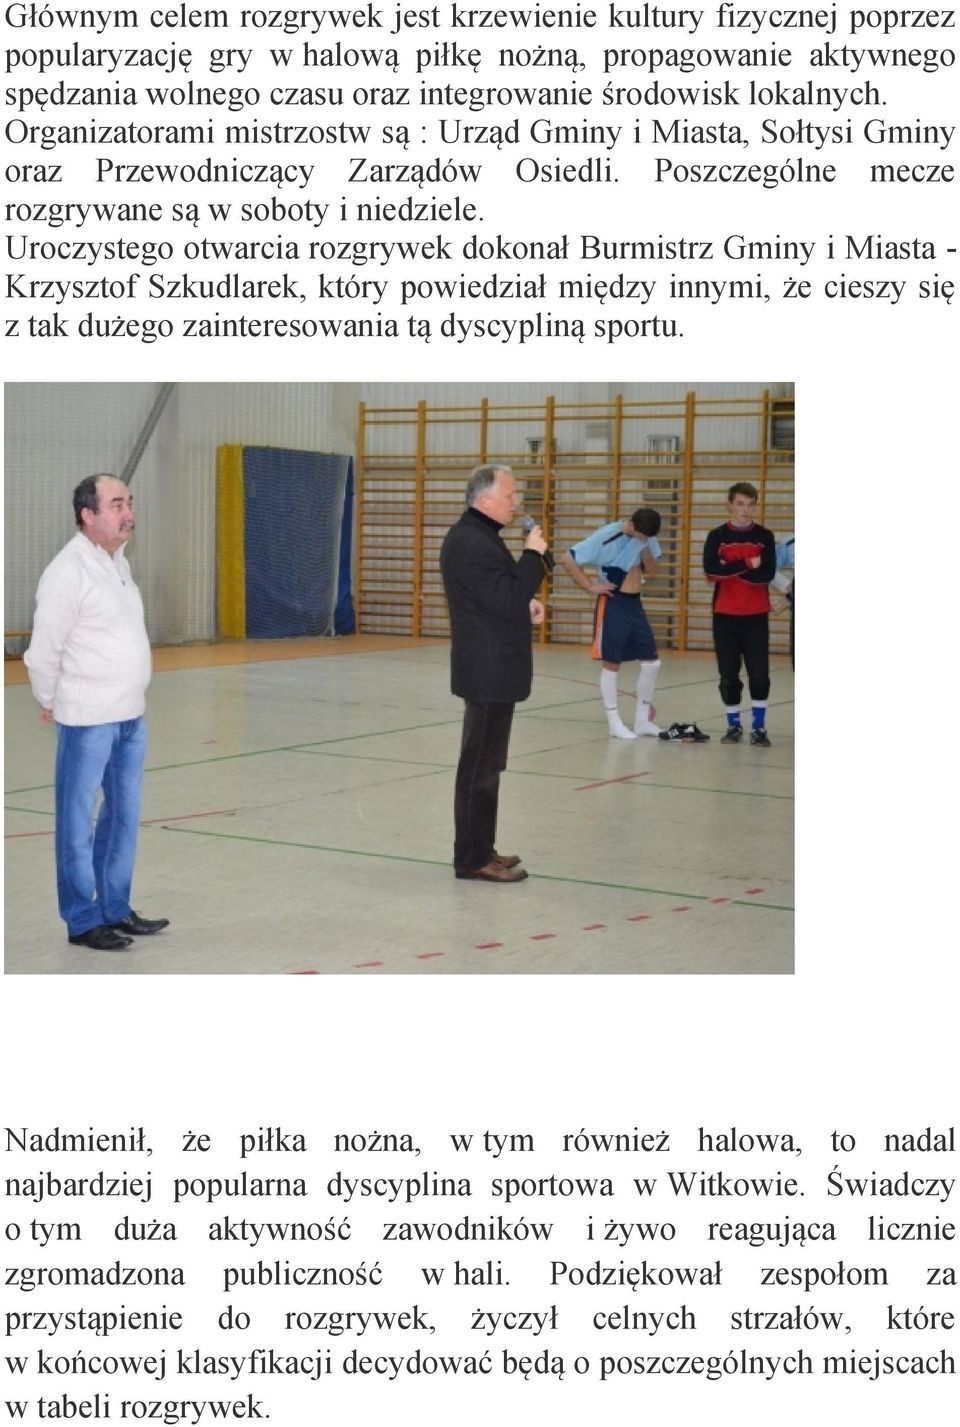 Uroczystego otwarcia rozgrywek dokonał Burmistrz Gminy i Miasta Krzysztof Szkudlarek, który powiedział między innymi, że cieszy się z tak dużego zainteresowania tą dyscypliną sportu.